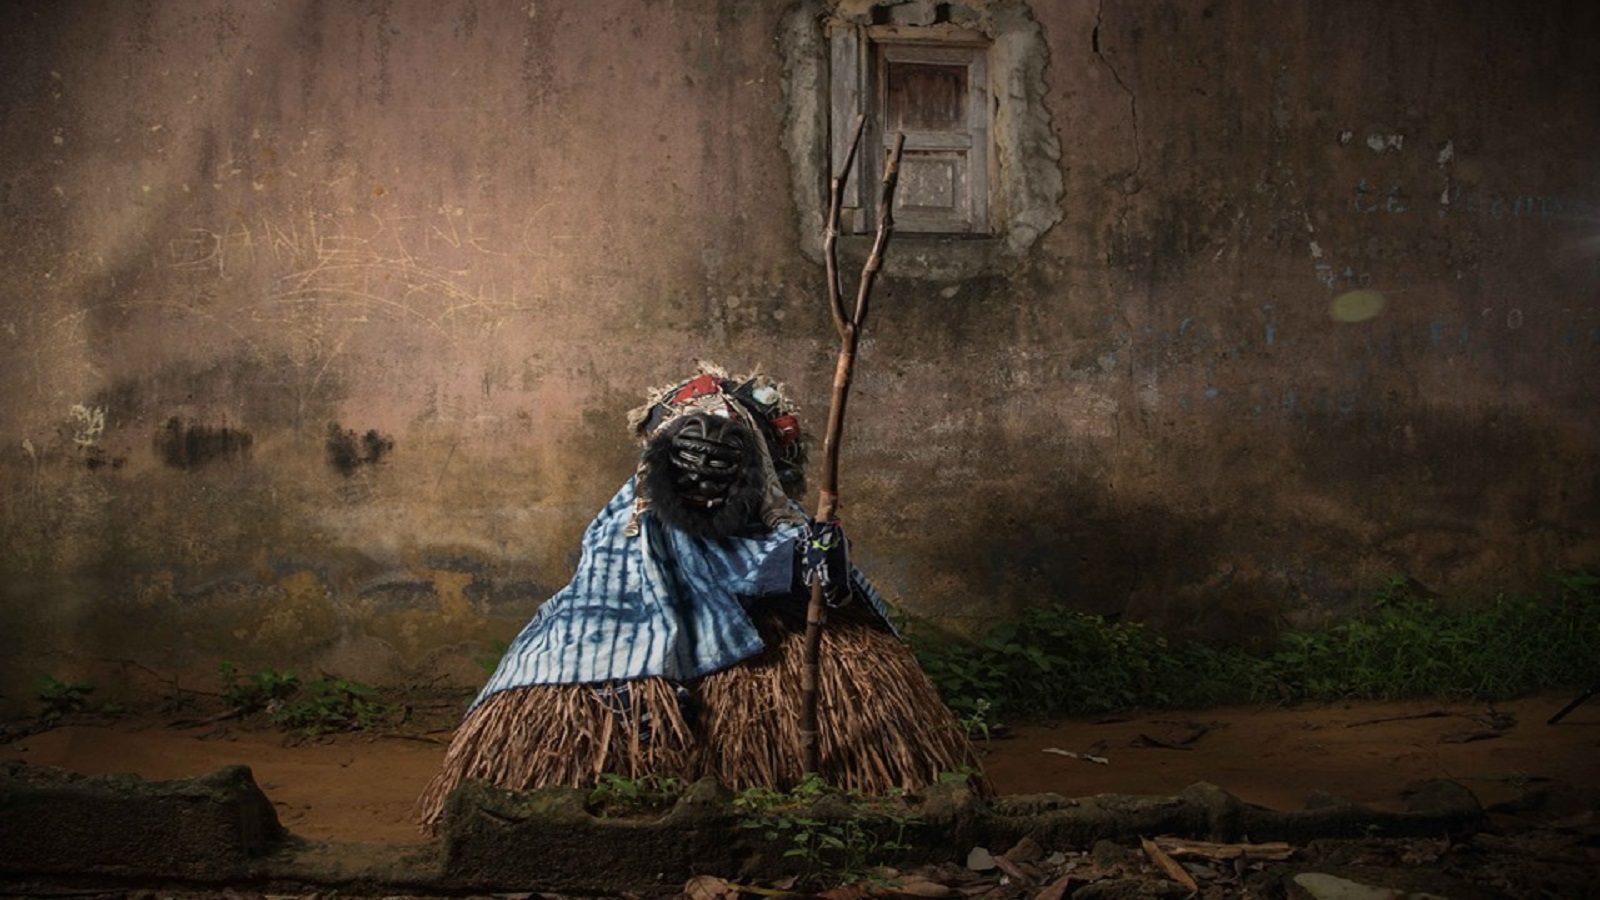 القناع الأثمن عند النيابواز، إحدى قوميات ساحل العاج، يُستعمل في طقوس إثنية (مصطفى شعيتلي، لبنان)